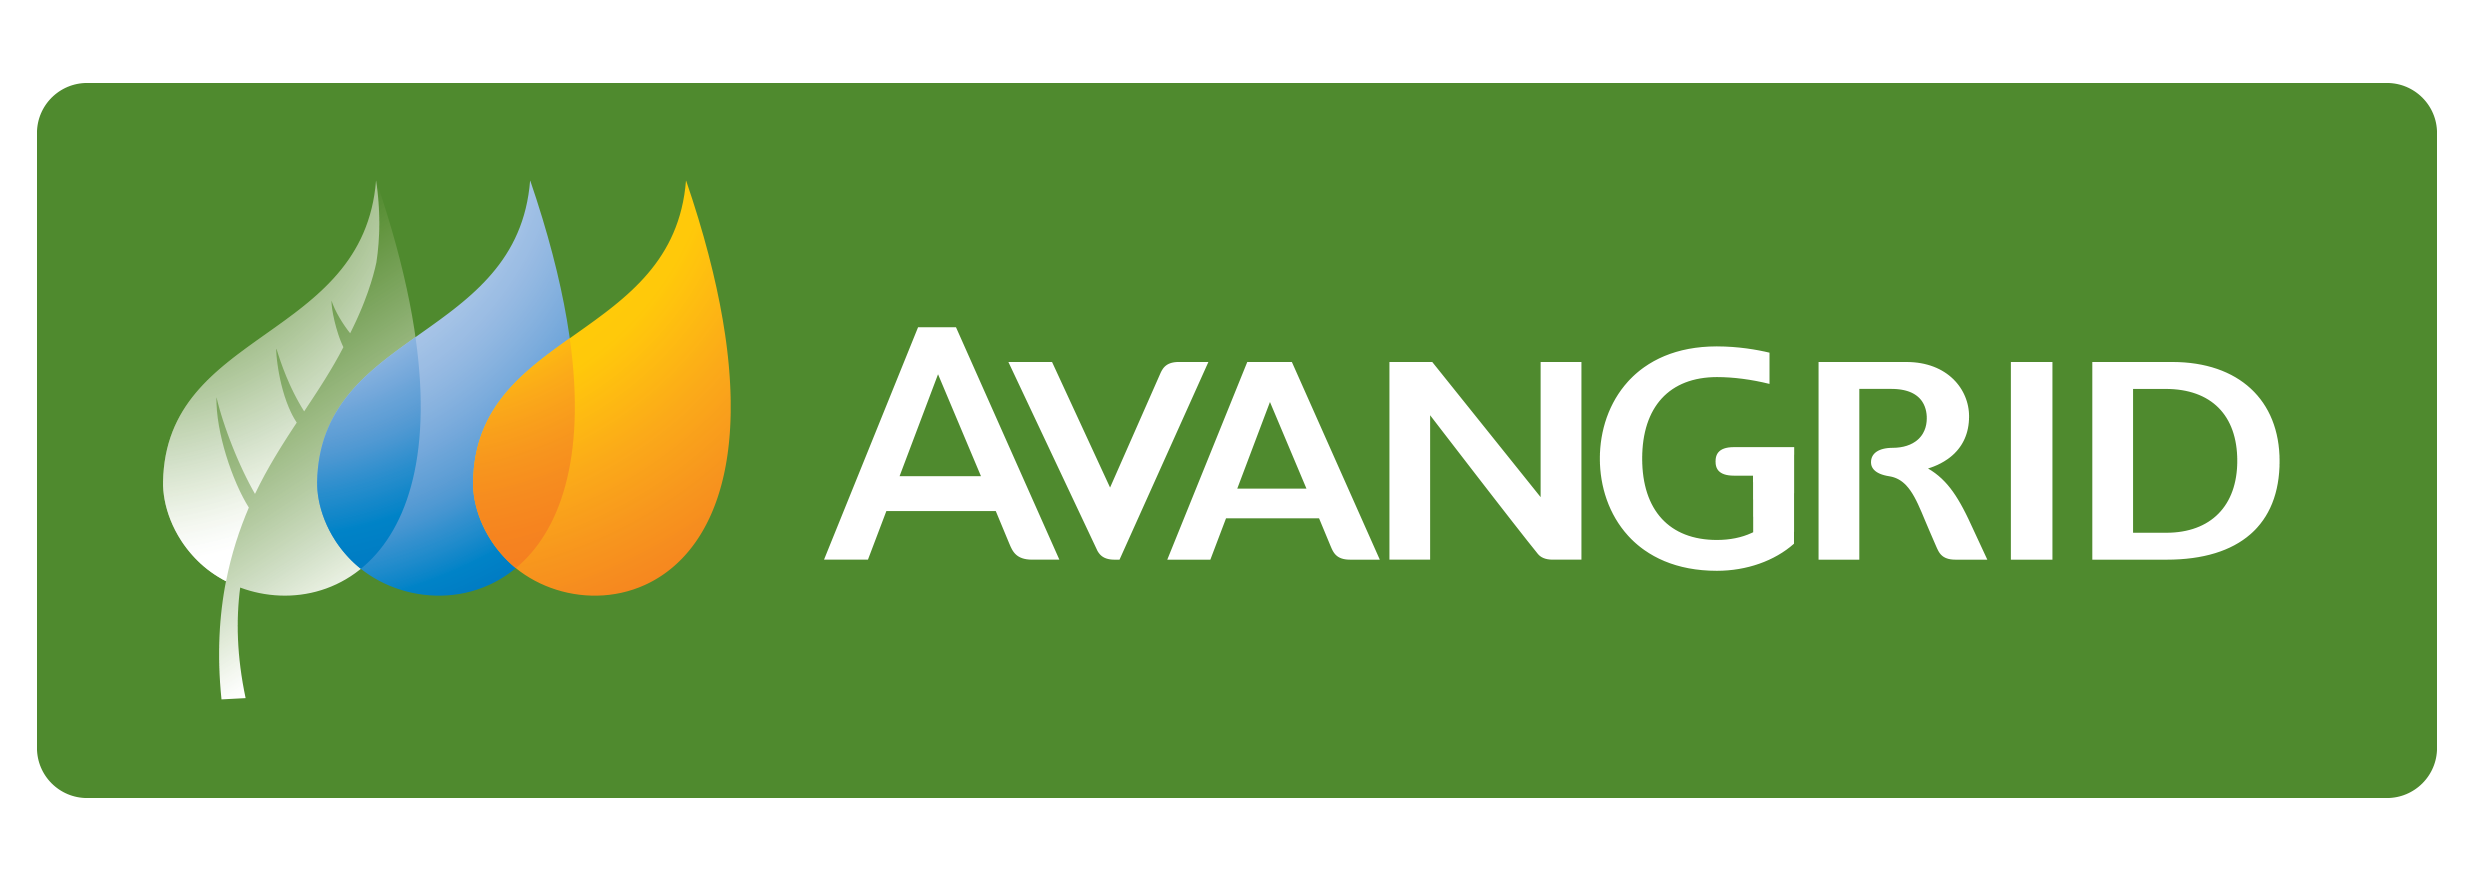 Avangrid, Inc. logo